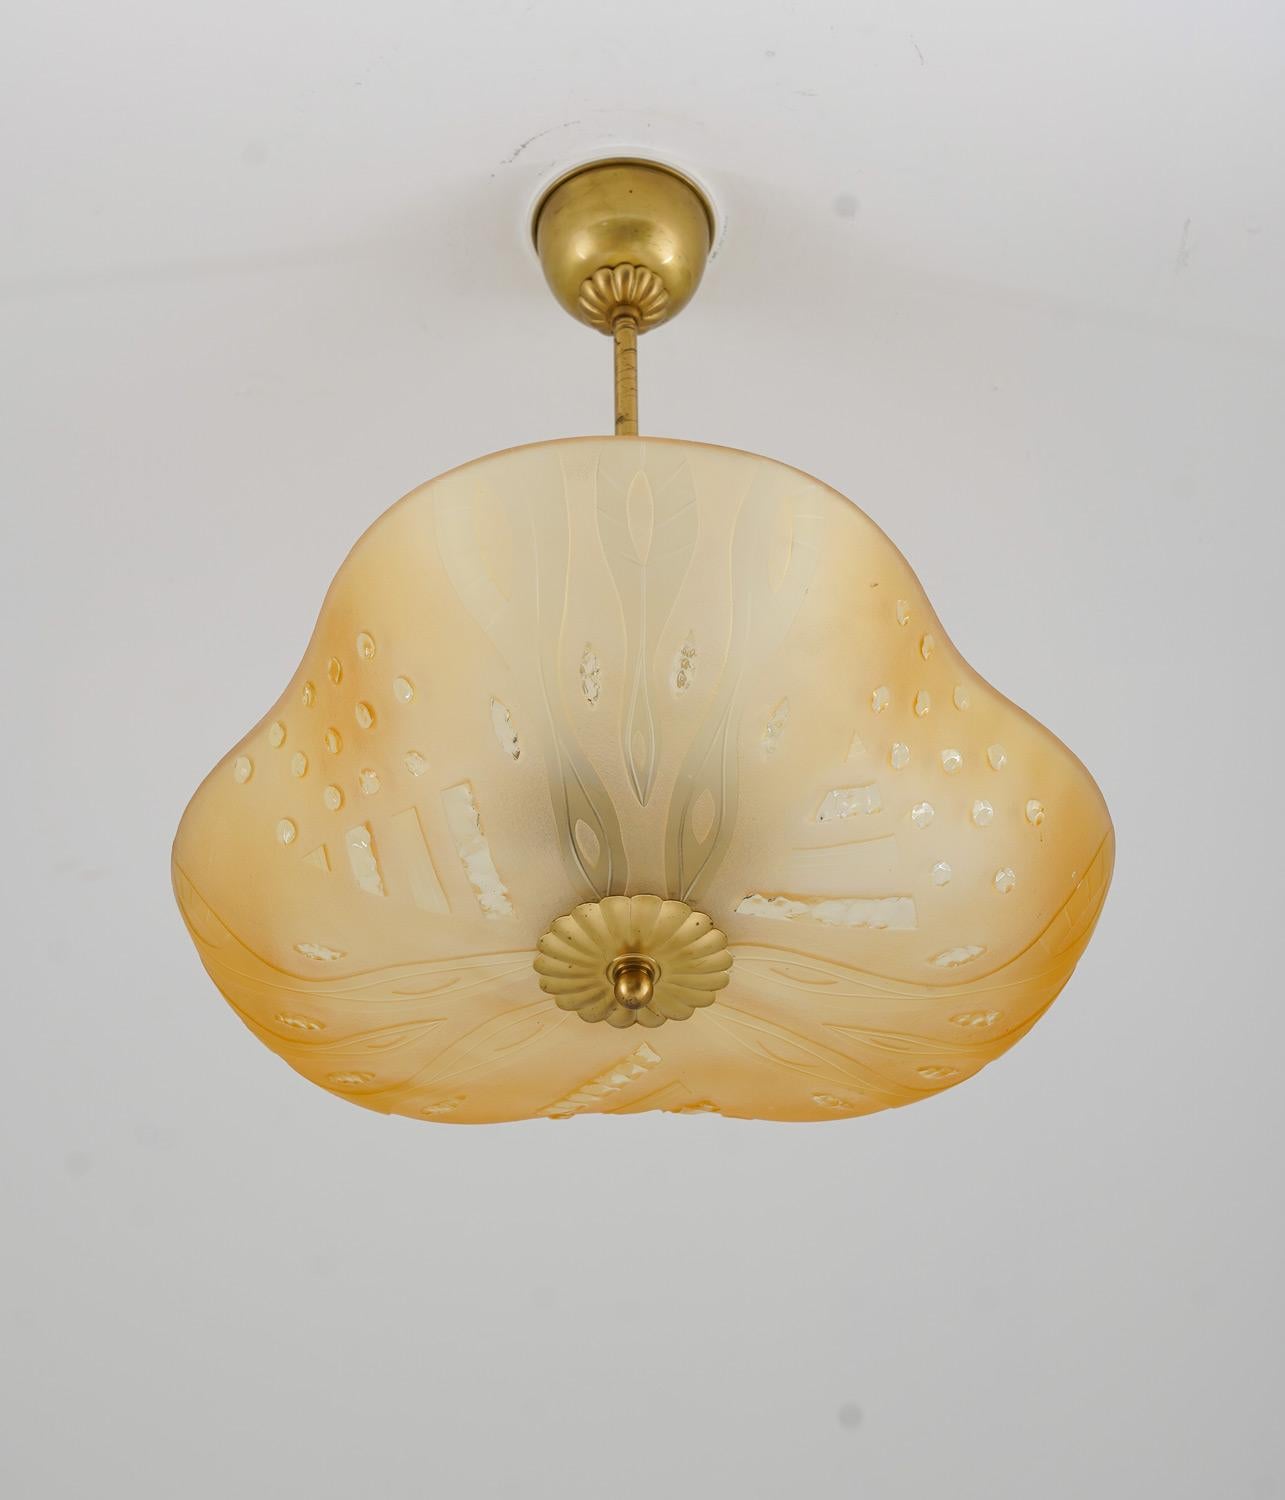 Magnifique pendentif en laiton et verre dépoli, probablement produit par Orrefors en Suède vers 1940. 
Le verre dépoli de couleur ambre donne une belle lumière douce. 
La tige peut être raccourcie pour créer un montage encastré.

Condit : Bon